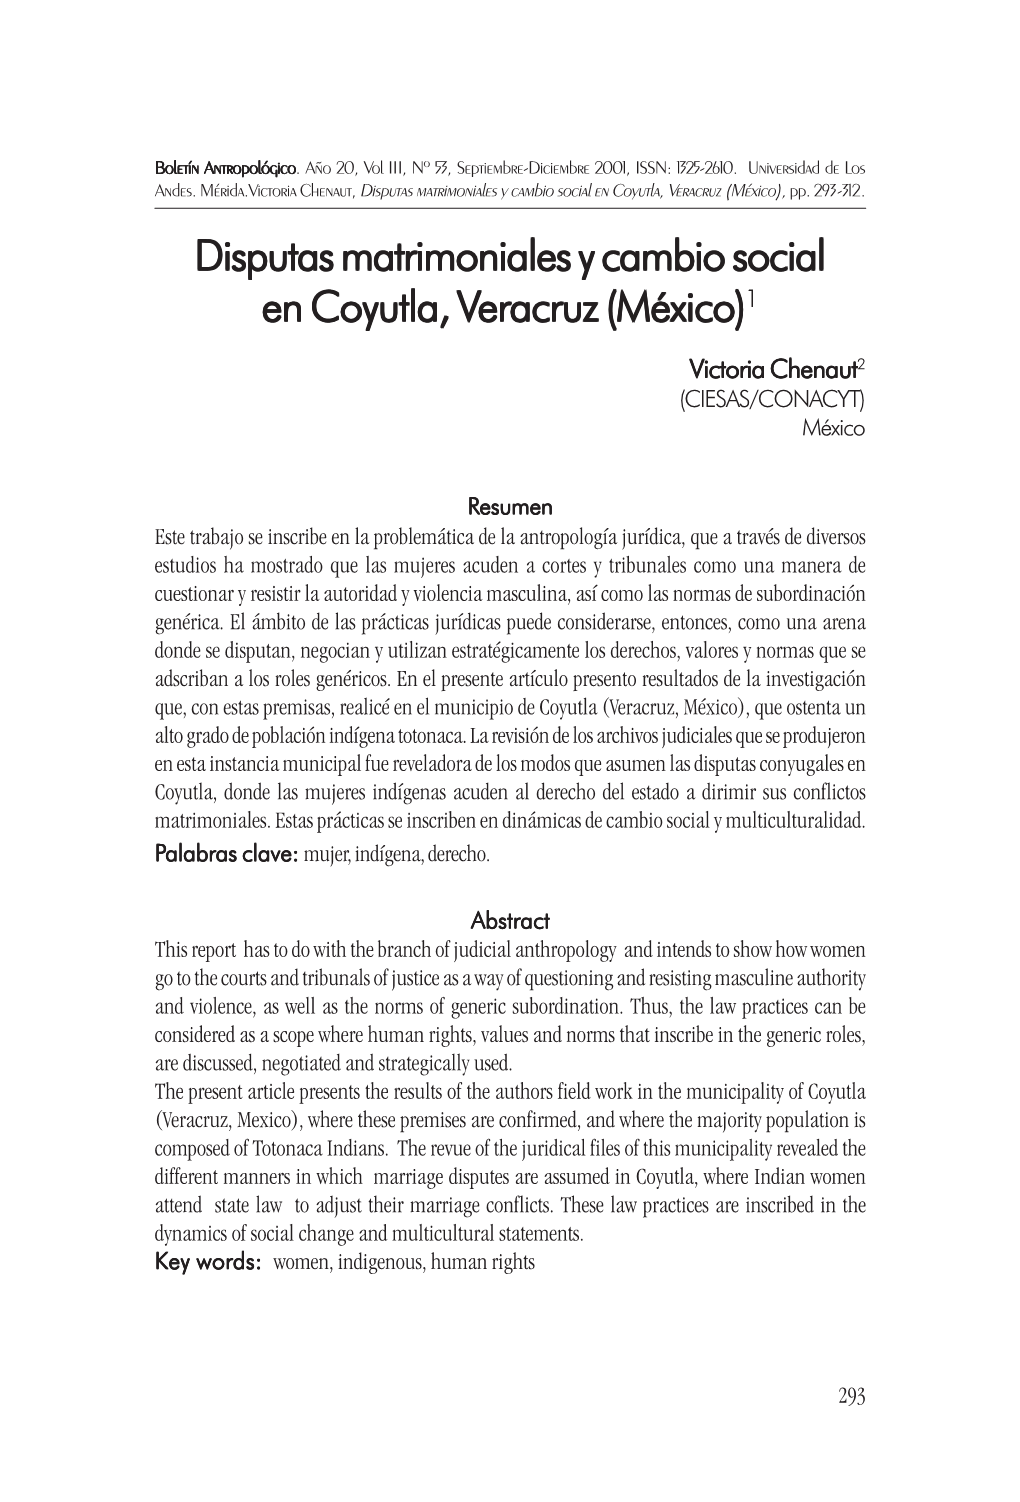 Disputas Matrimoniales Y Cambio Social En Coyutla, V En Coyutla